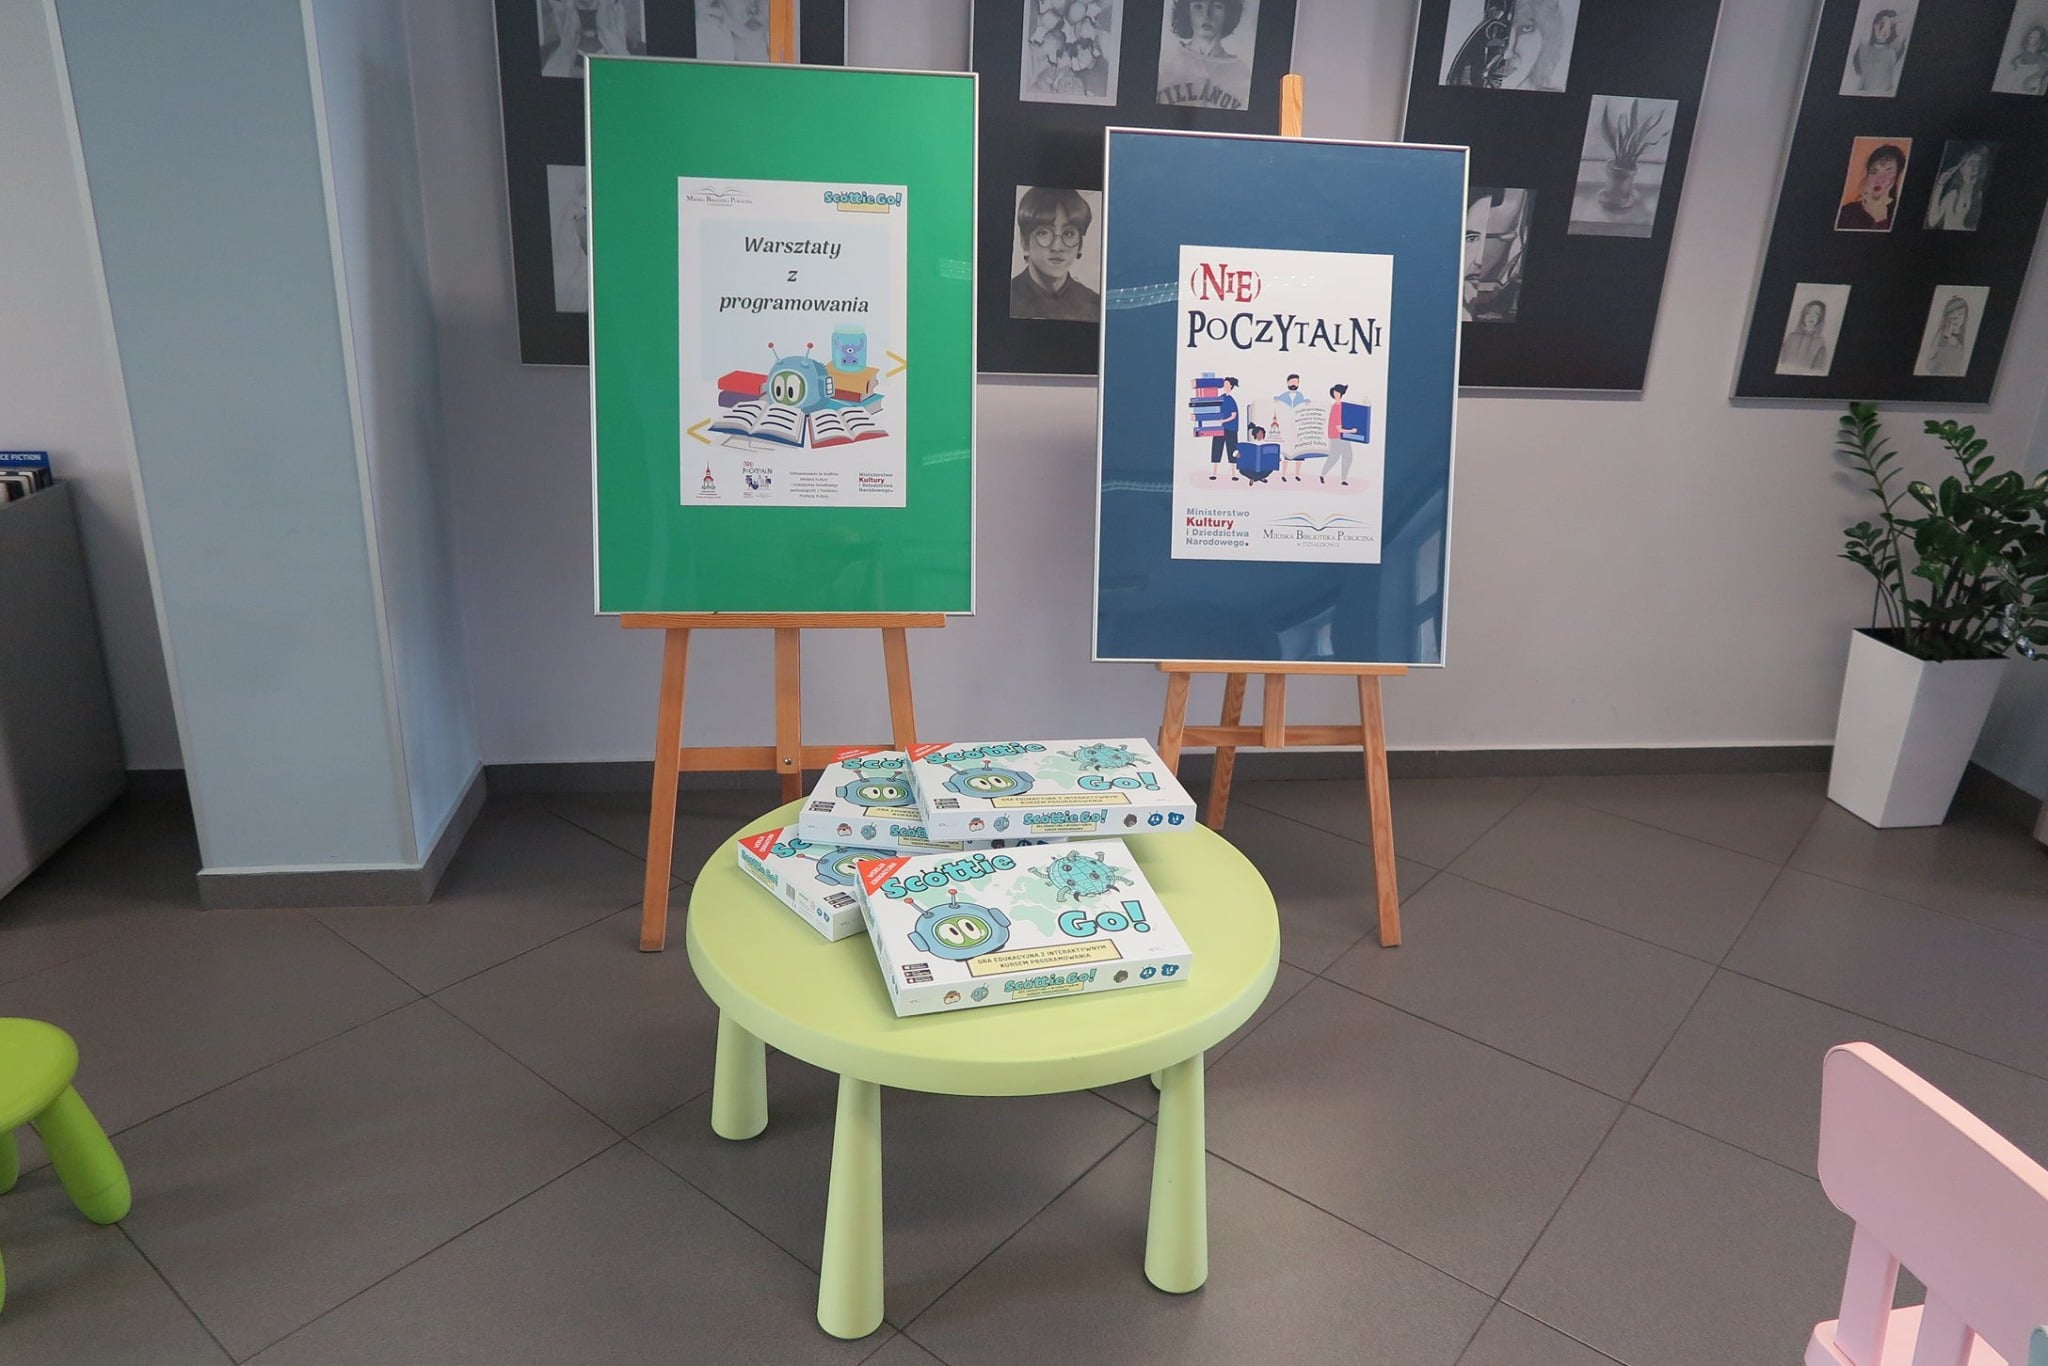 Dwie sztalugi z plakatami, od lewej plakat ''Warsztaty z programowania'' i plakat ''(Nie) poczytalni'' na zielonym stoliku leżą 4 gry ''Scottie Go''. 